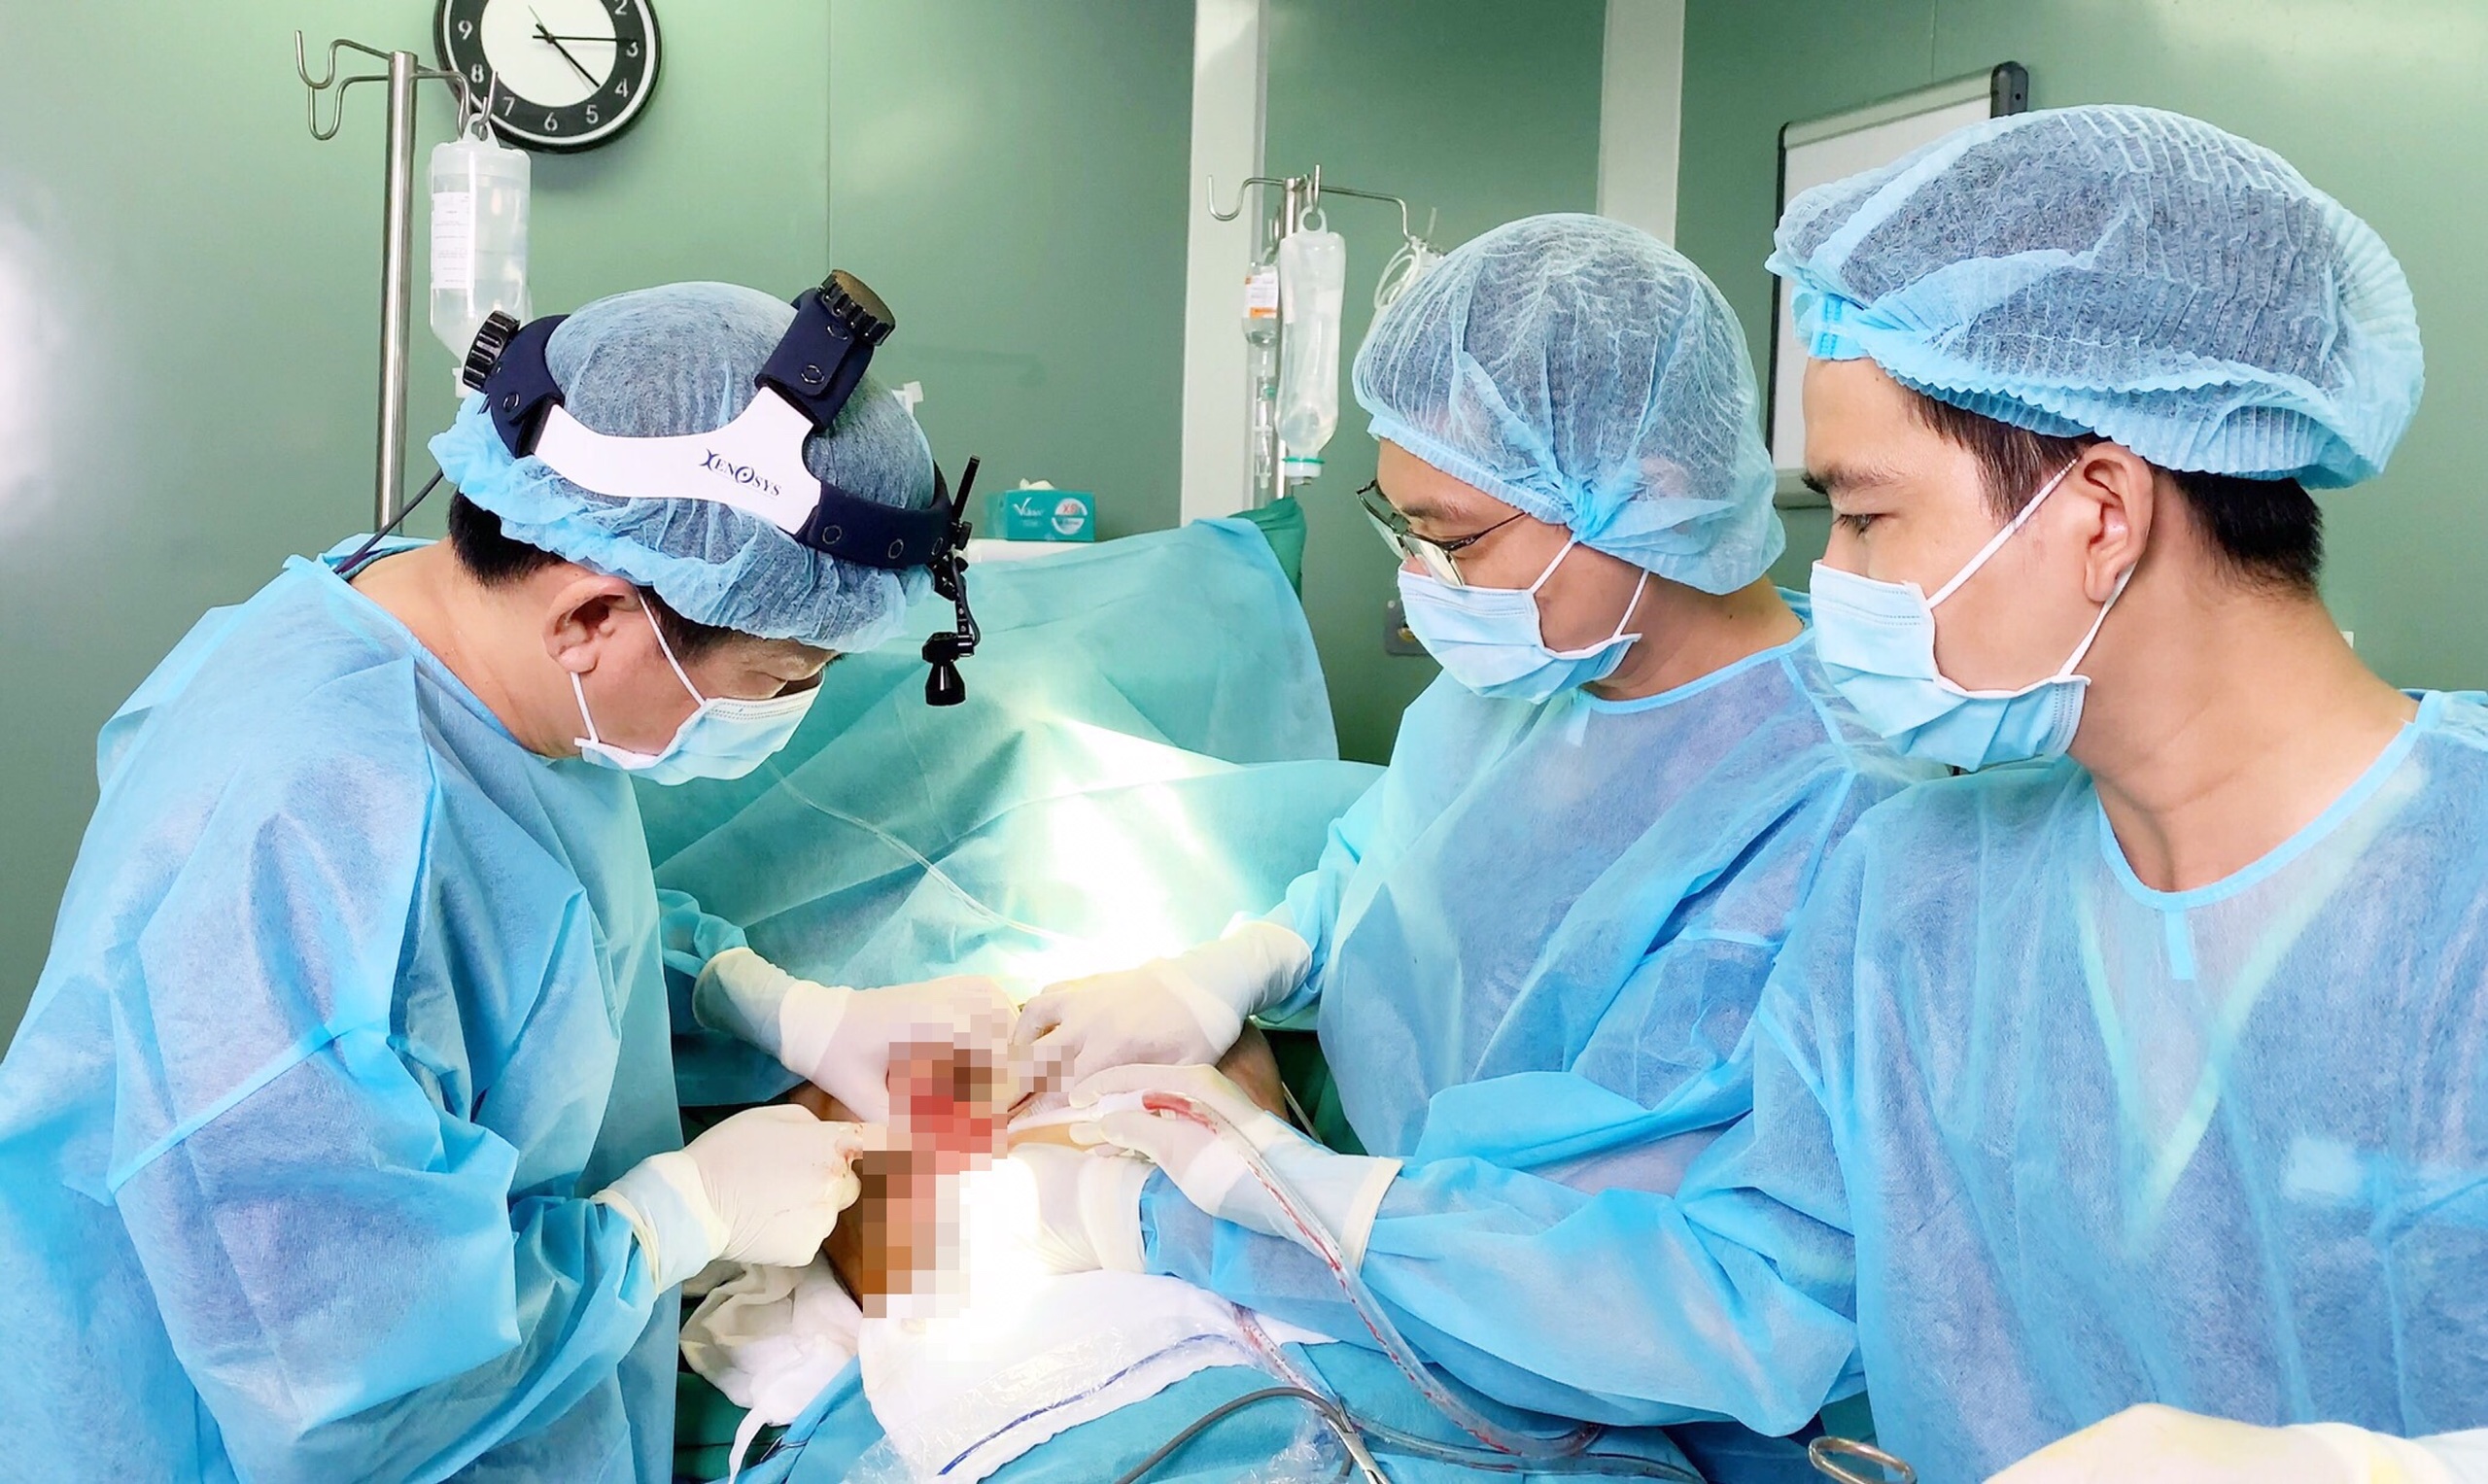 Nữ bệnh nhân phải cấp cứu vì miếng gạc y tế bị quên trong khoang ngực - Ảnh 1.